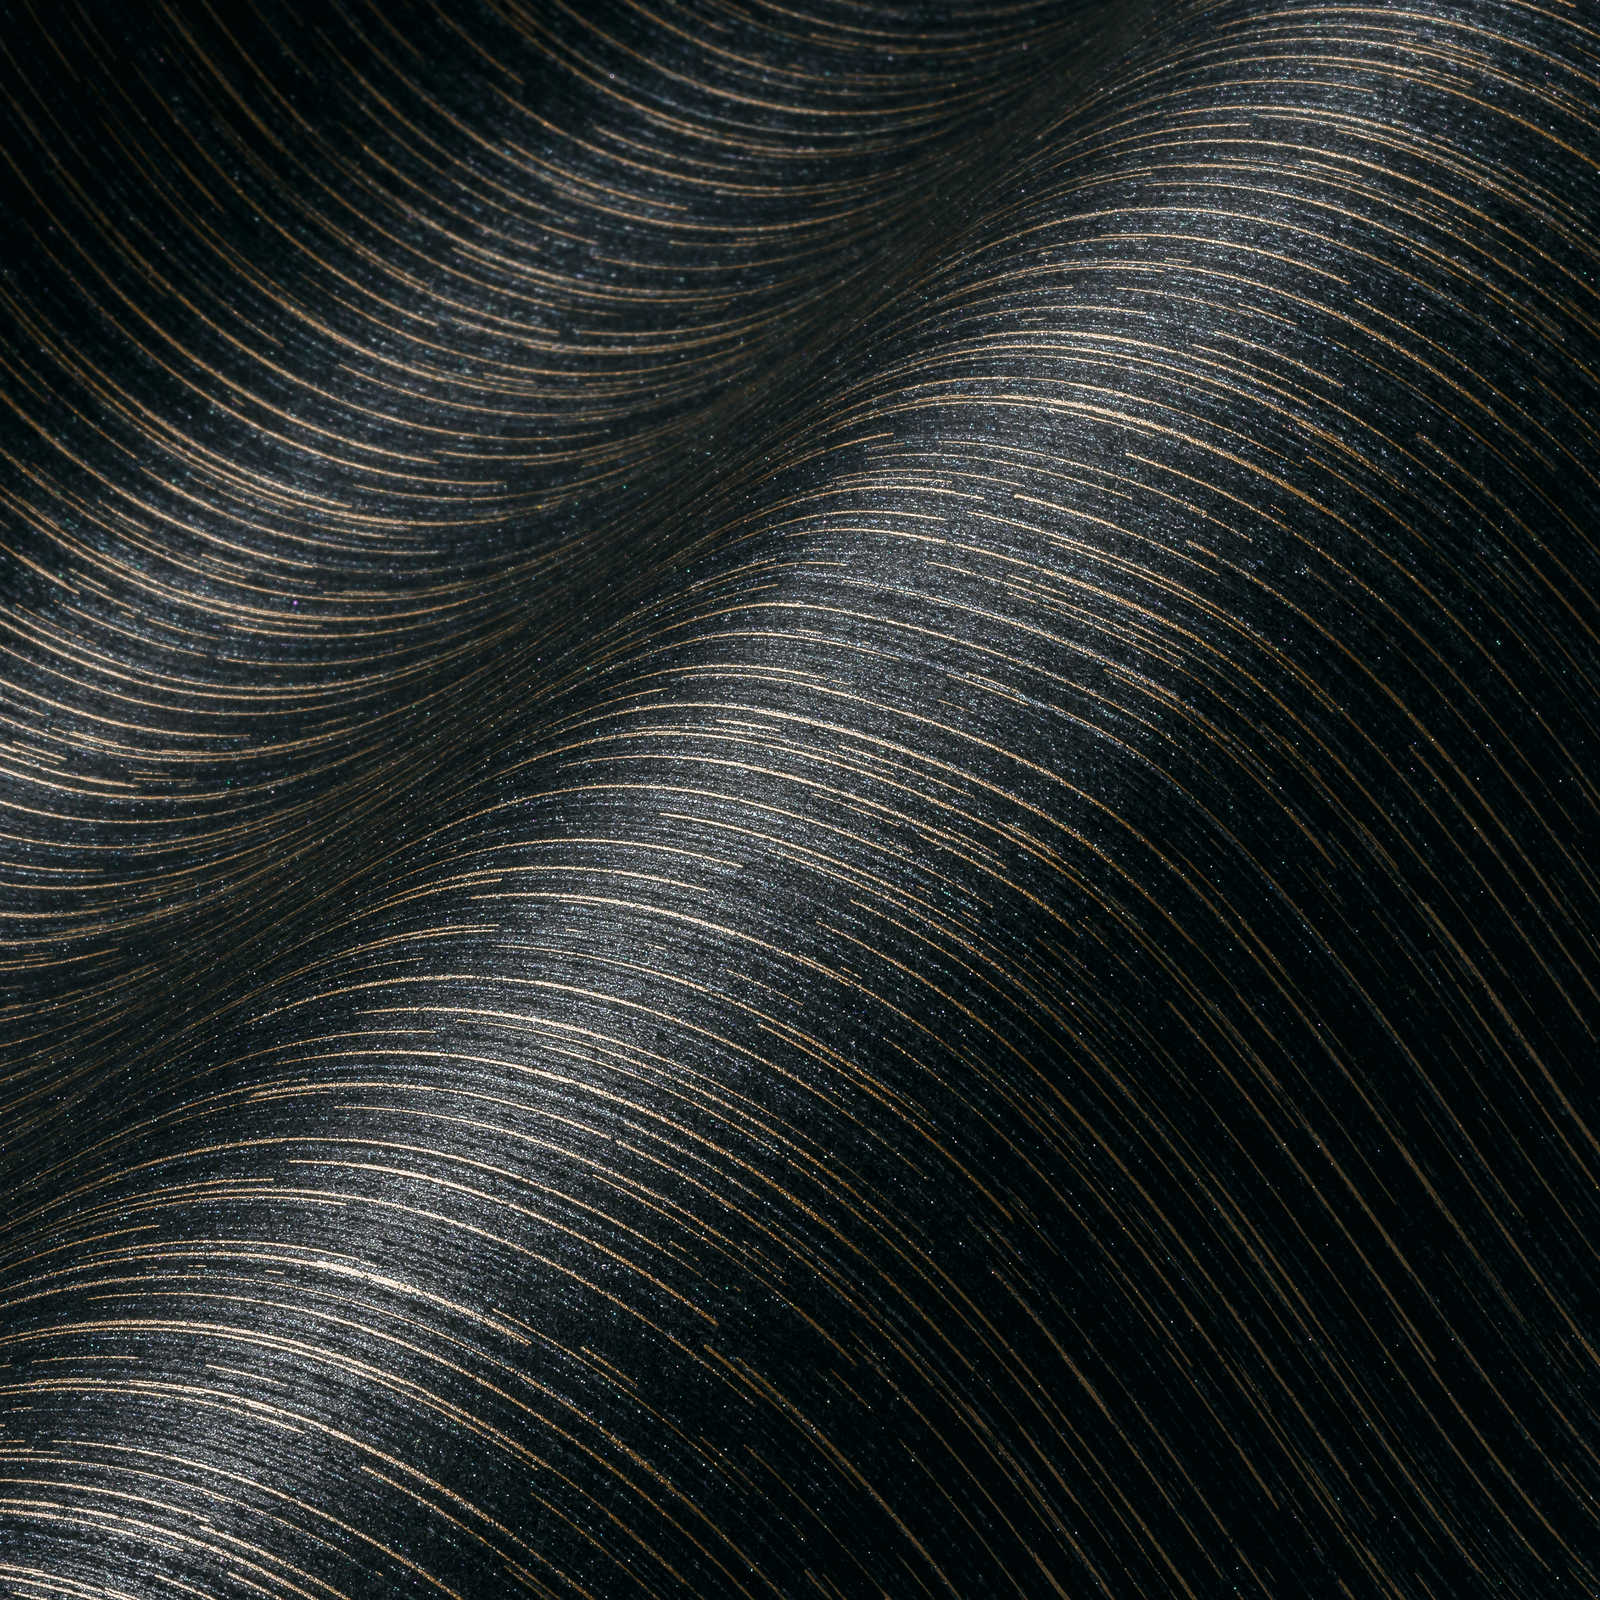             Schwarze Tapete mit Gold & Silber Linienmuster – Schwarz, Grau
        